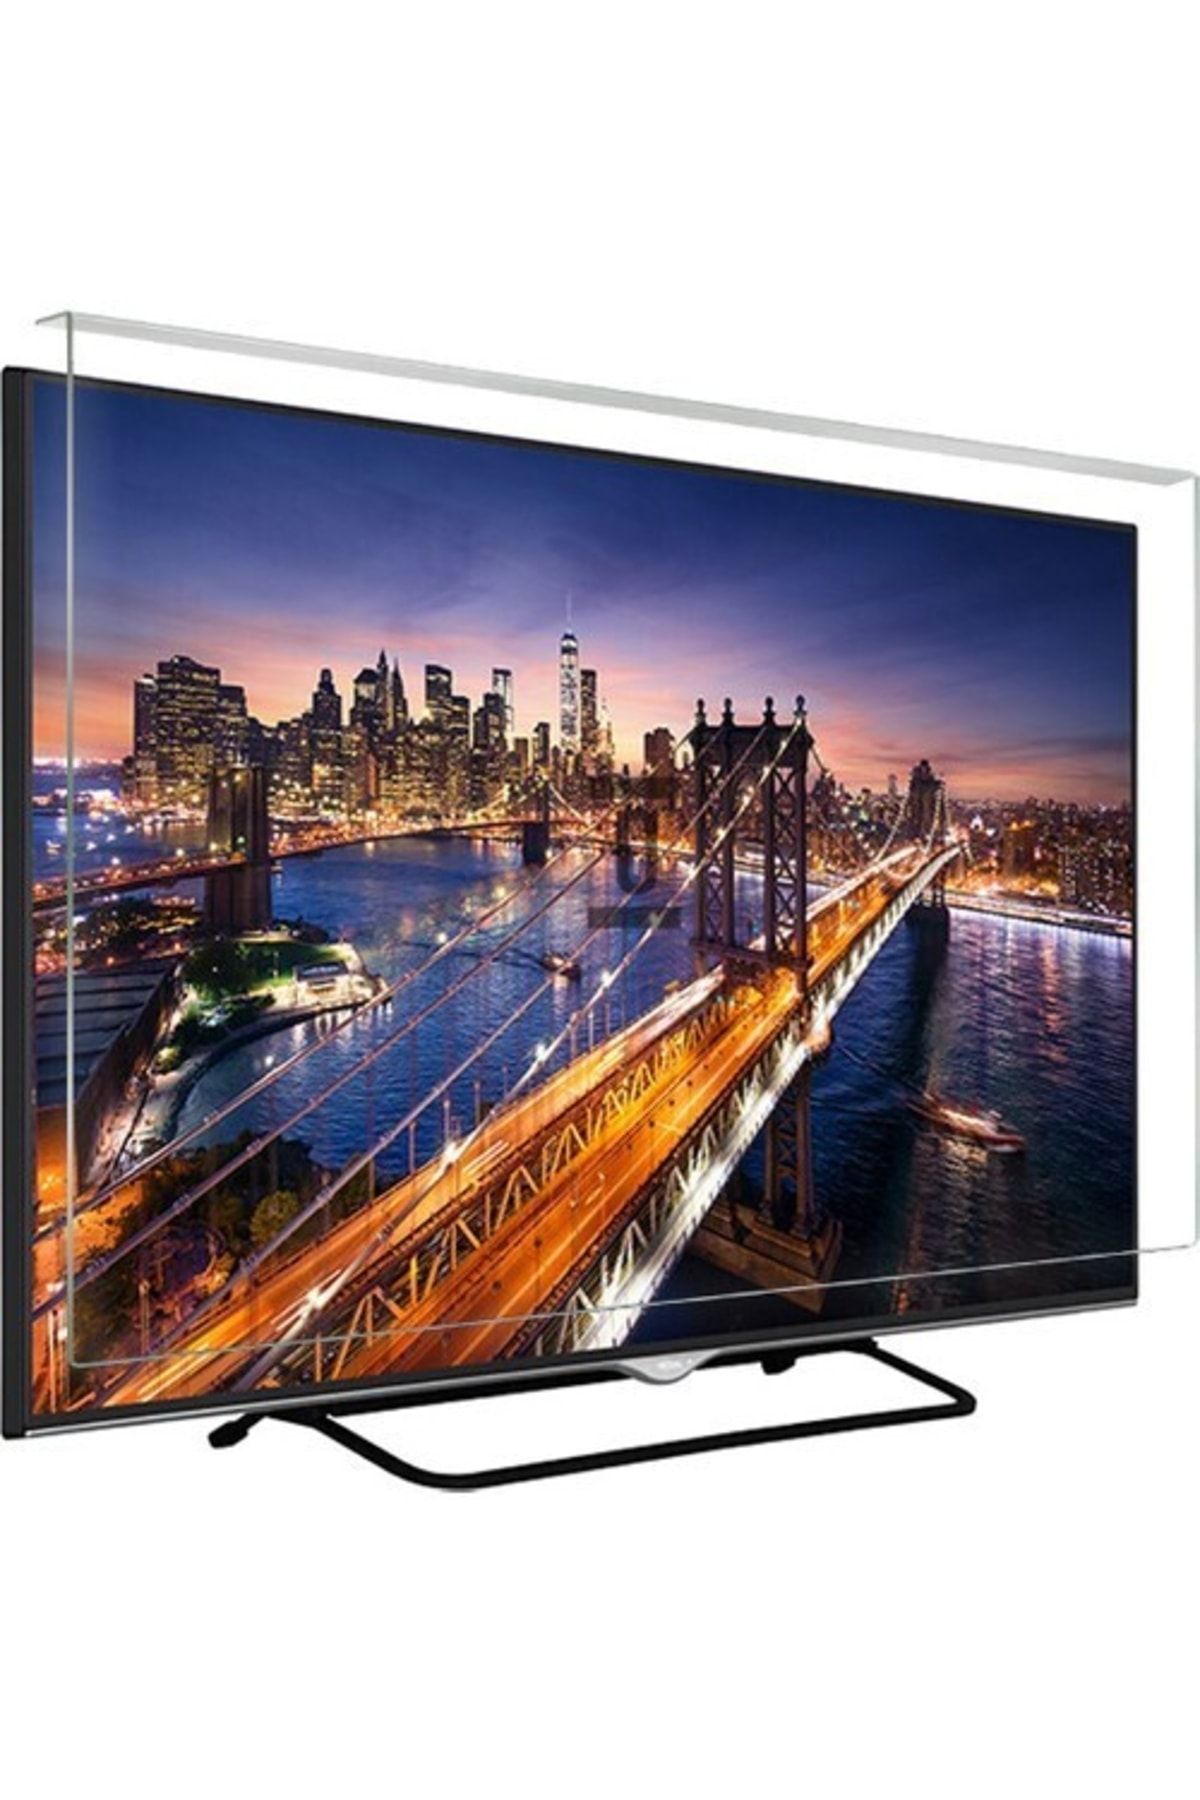 Telenova Asaf Online-evçelik 32p4001 Tv Ekran Koruyucu Düz (flat) Ekran